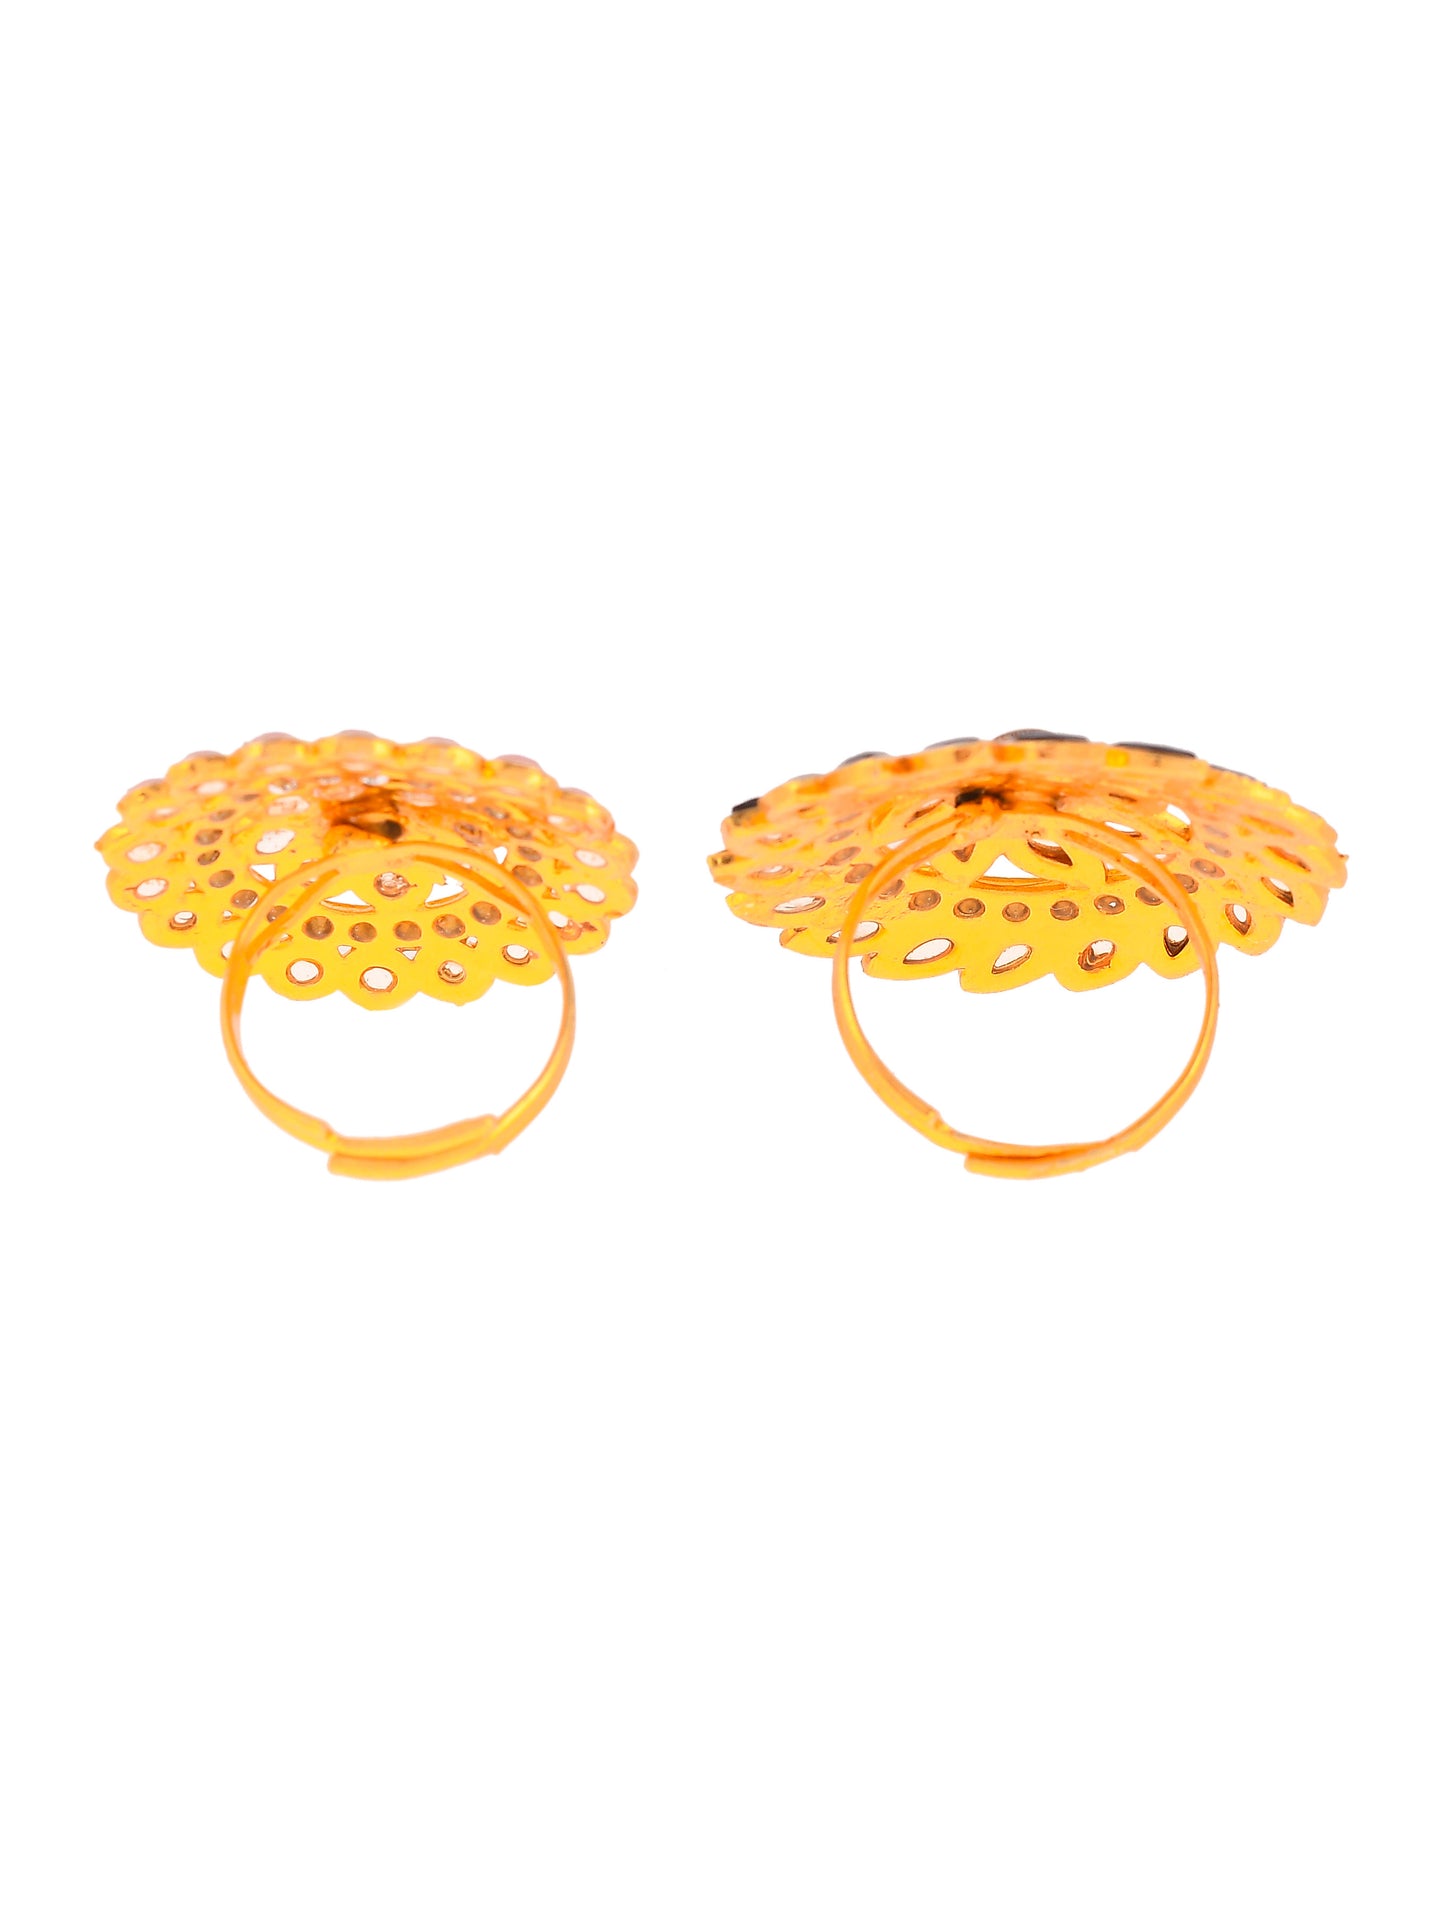 Set of 2 Gold Plated Kundan Adjustable Floral Ethnic Finger Ring